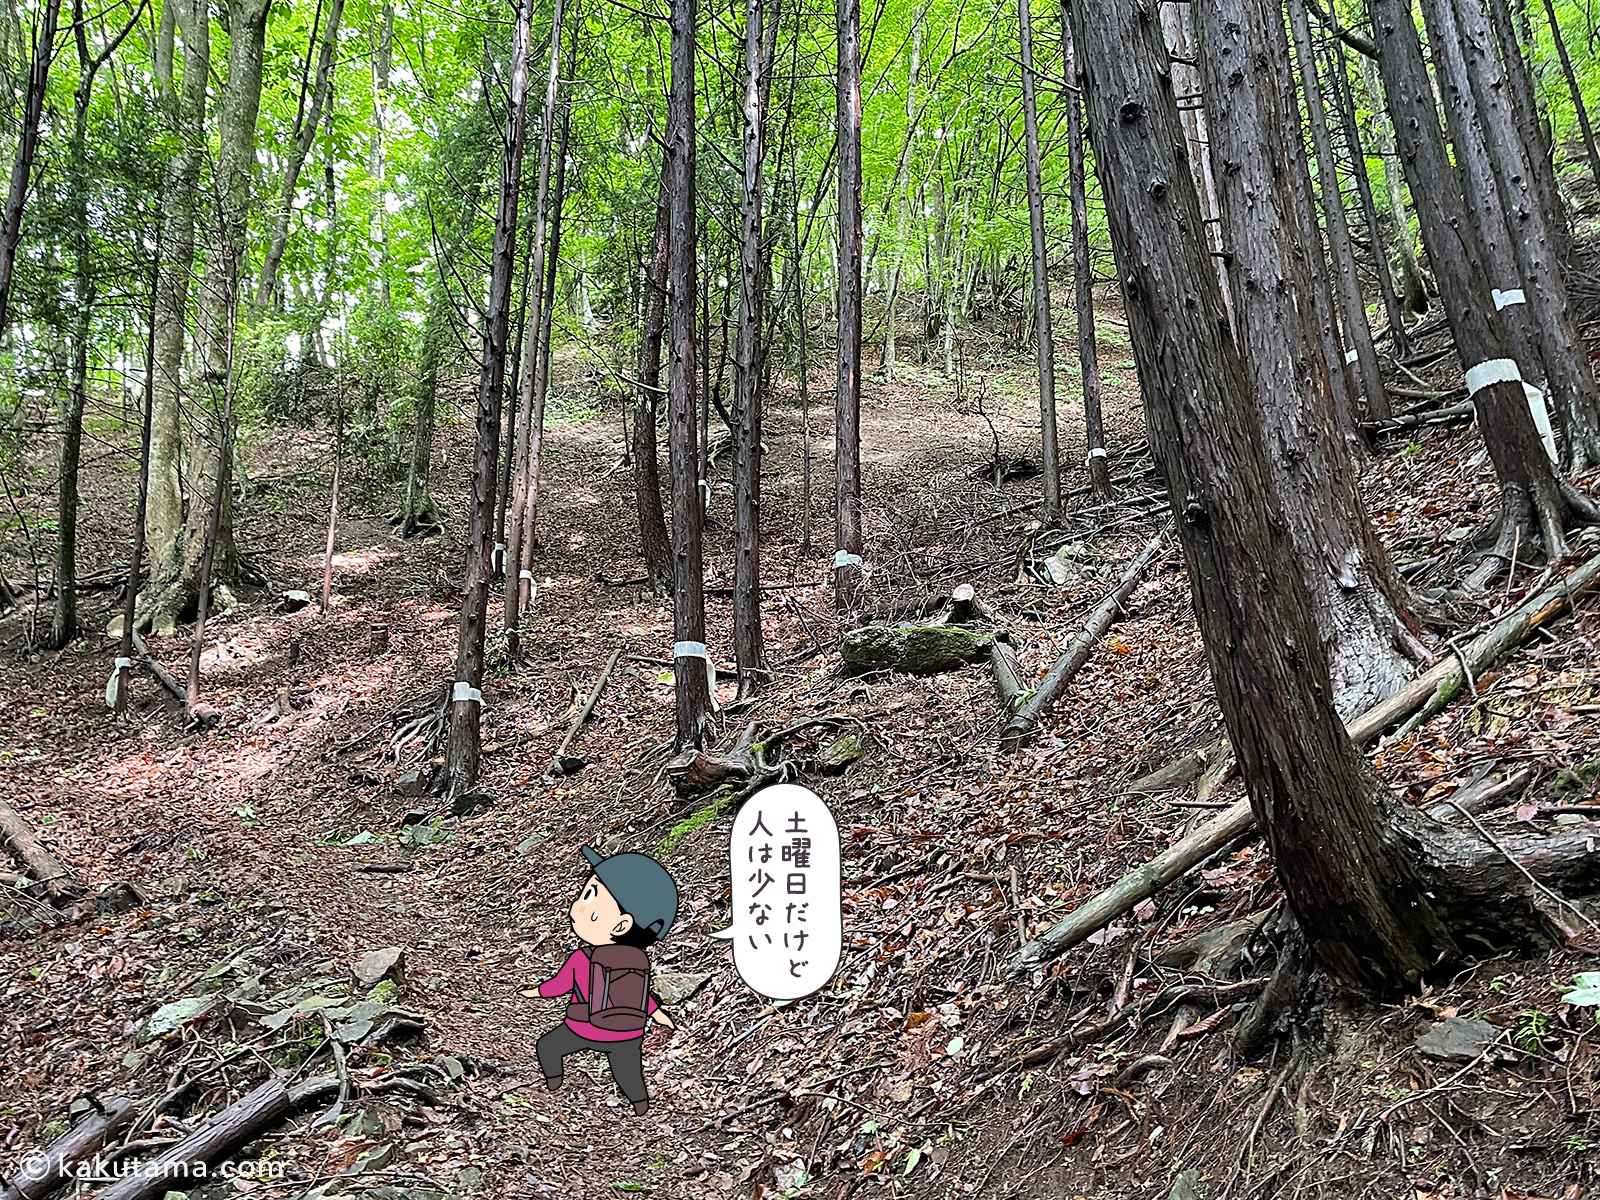 滝子山スミ沢ルートはそれなりにキツイ登山道だと思う写真と登山者のイラスト